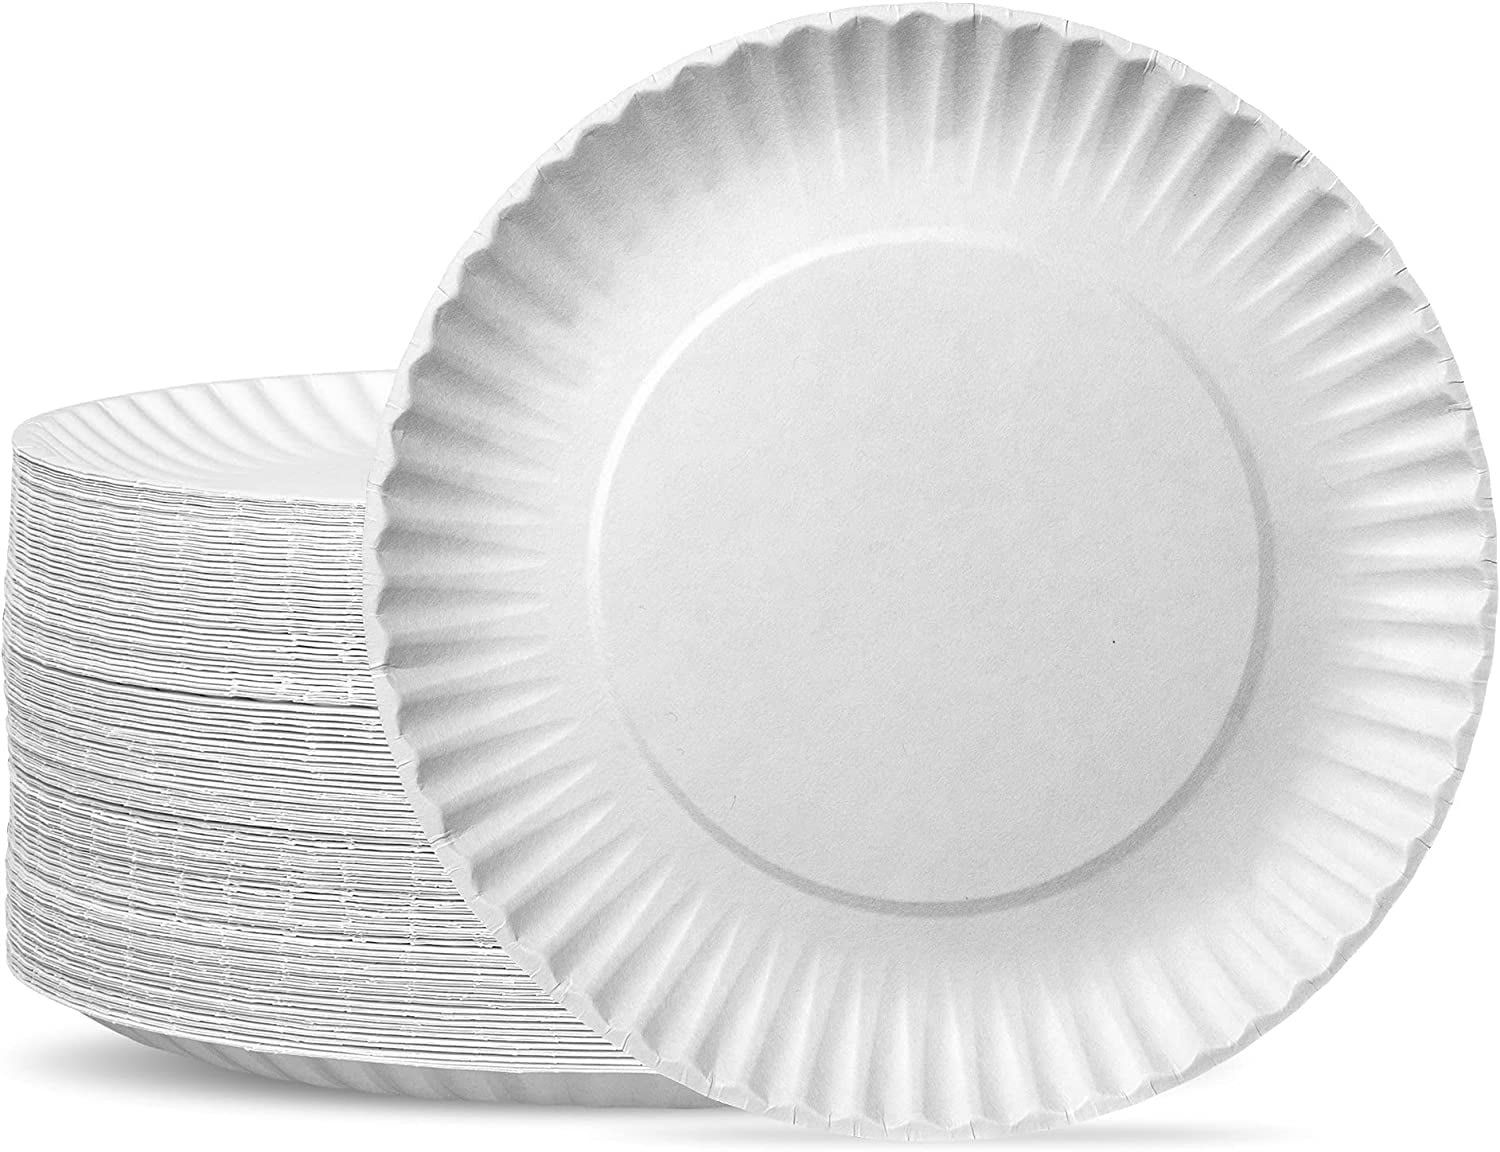 Wholesale & Bulk Paper Plates